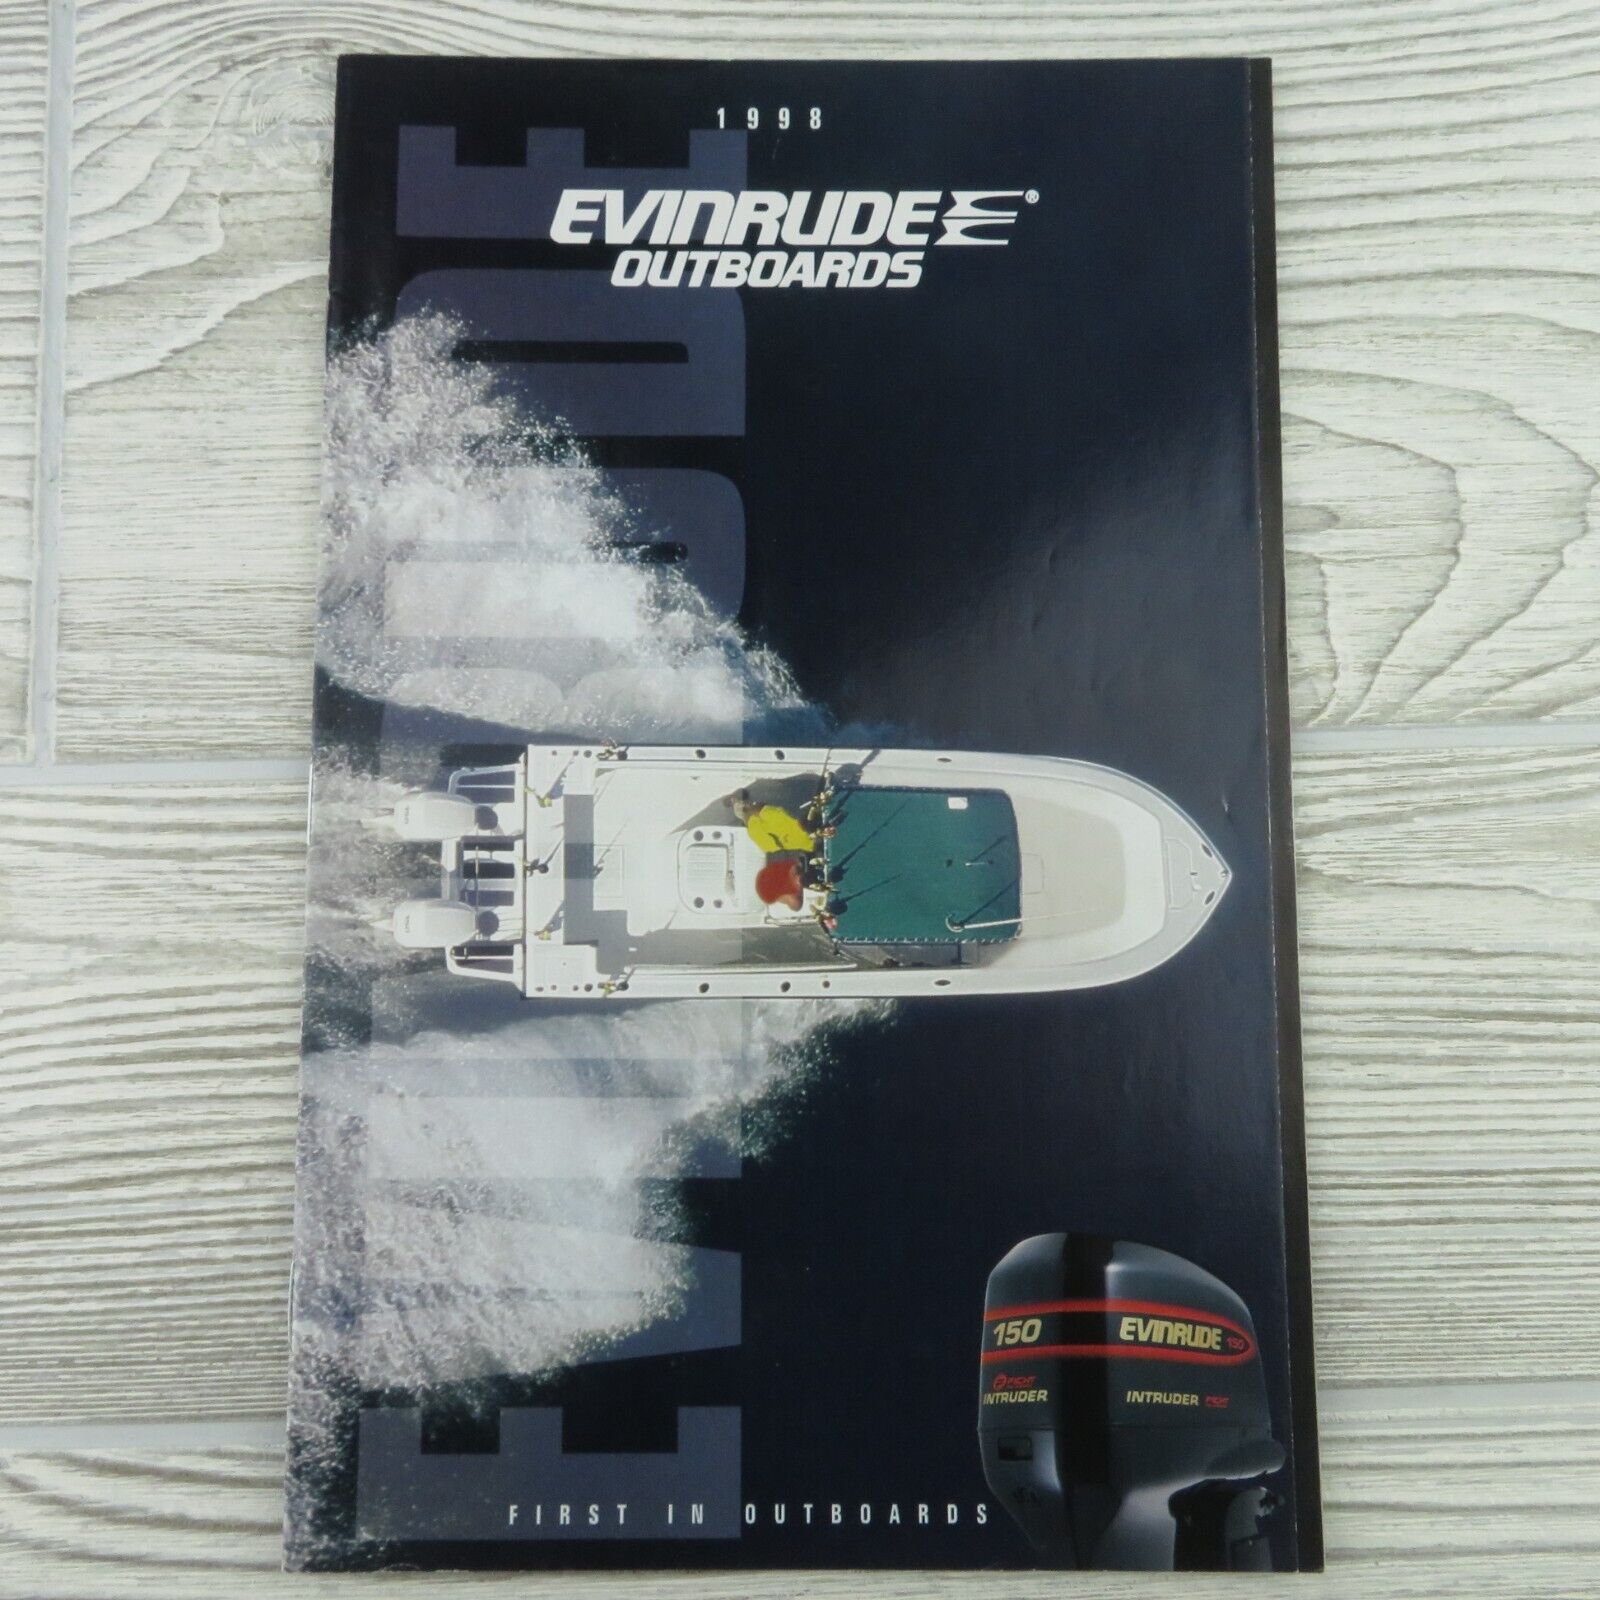 Evinrude - Outboards - 1998 - Brochure / Catalog - Dealership - Color - VTG